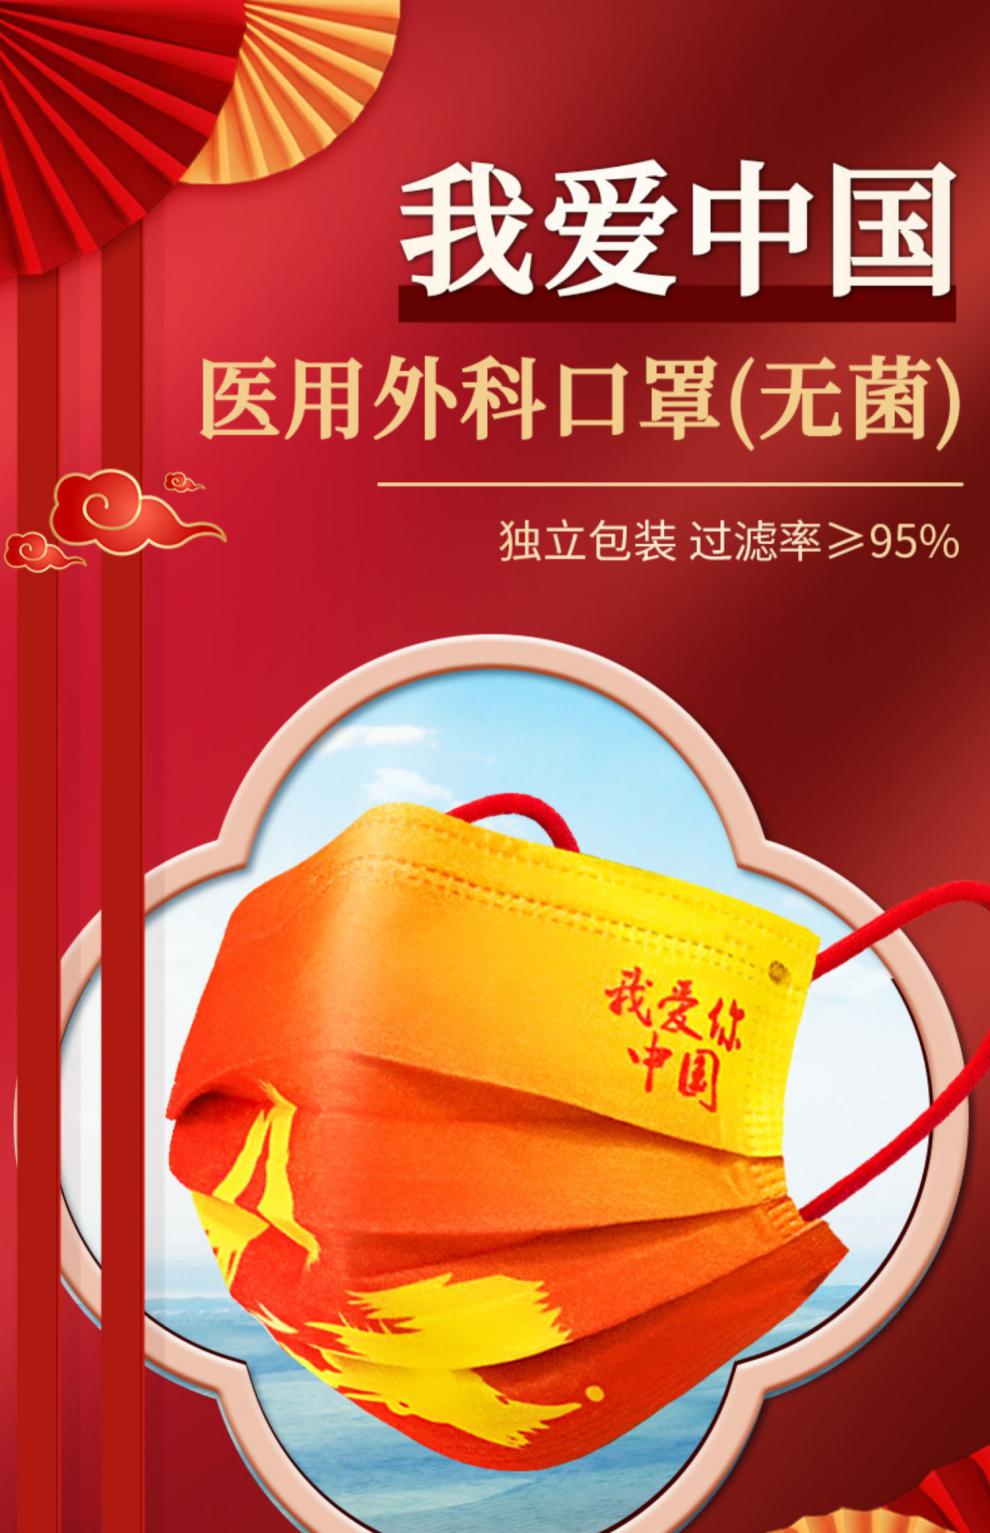 中国红口罩的文案图片